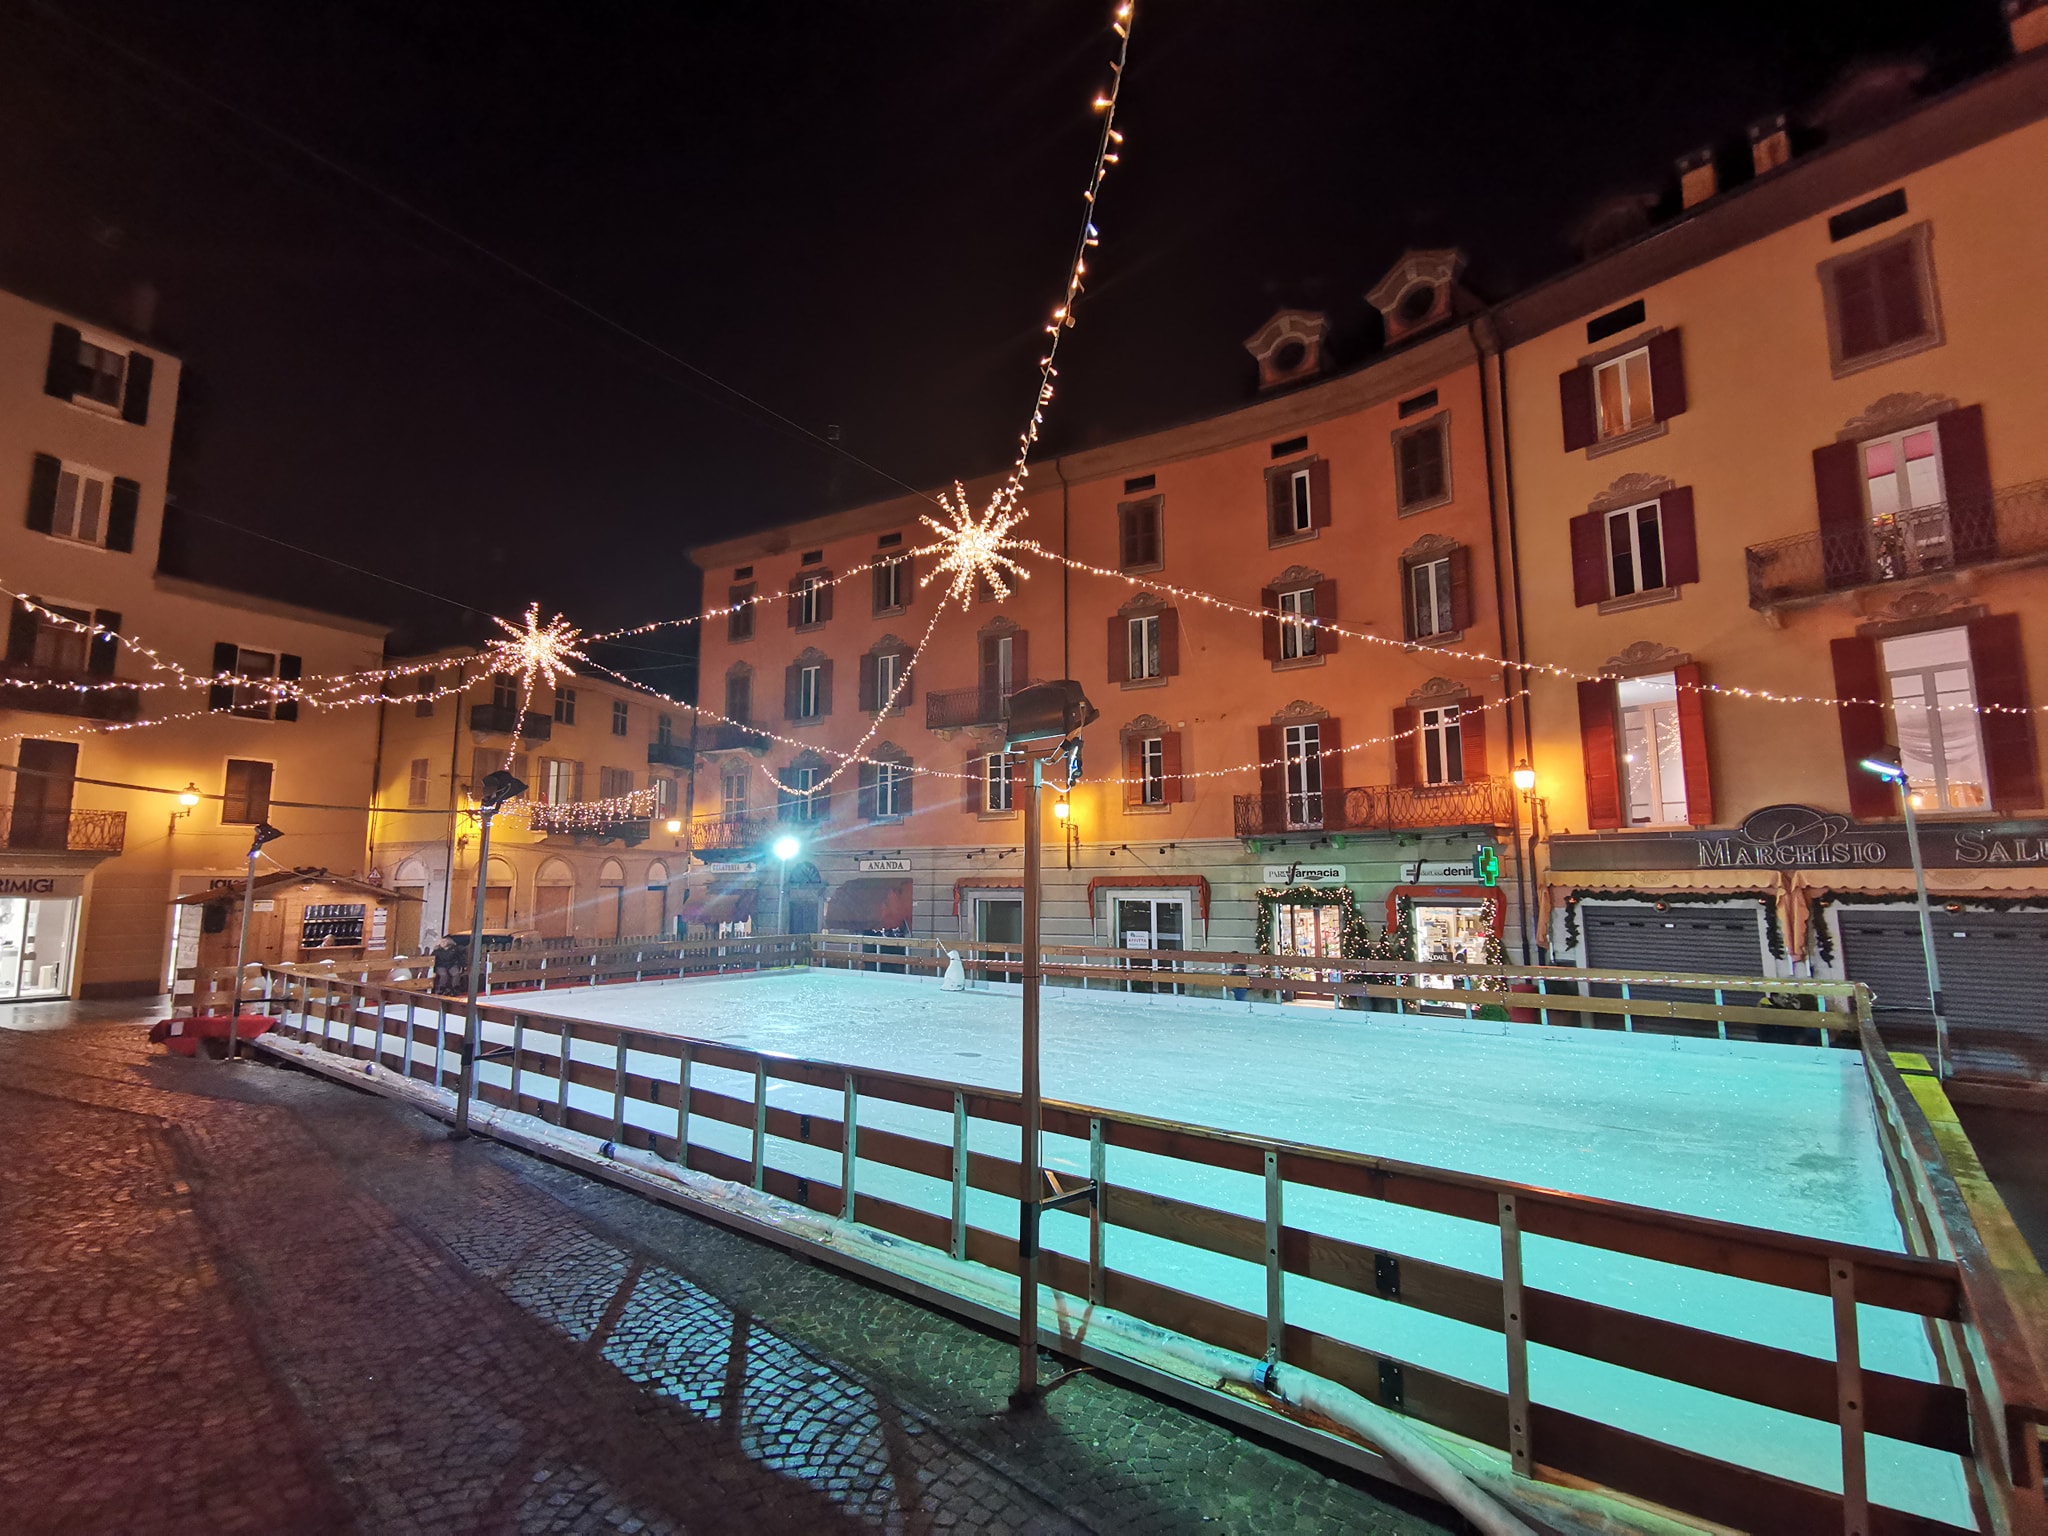 ‘Che Natale’ per le vie del centro storico di Mondovì